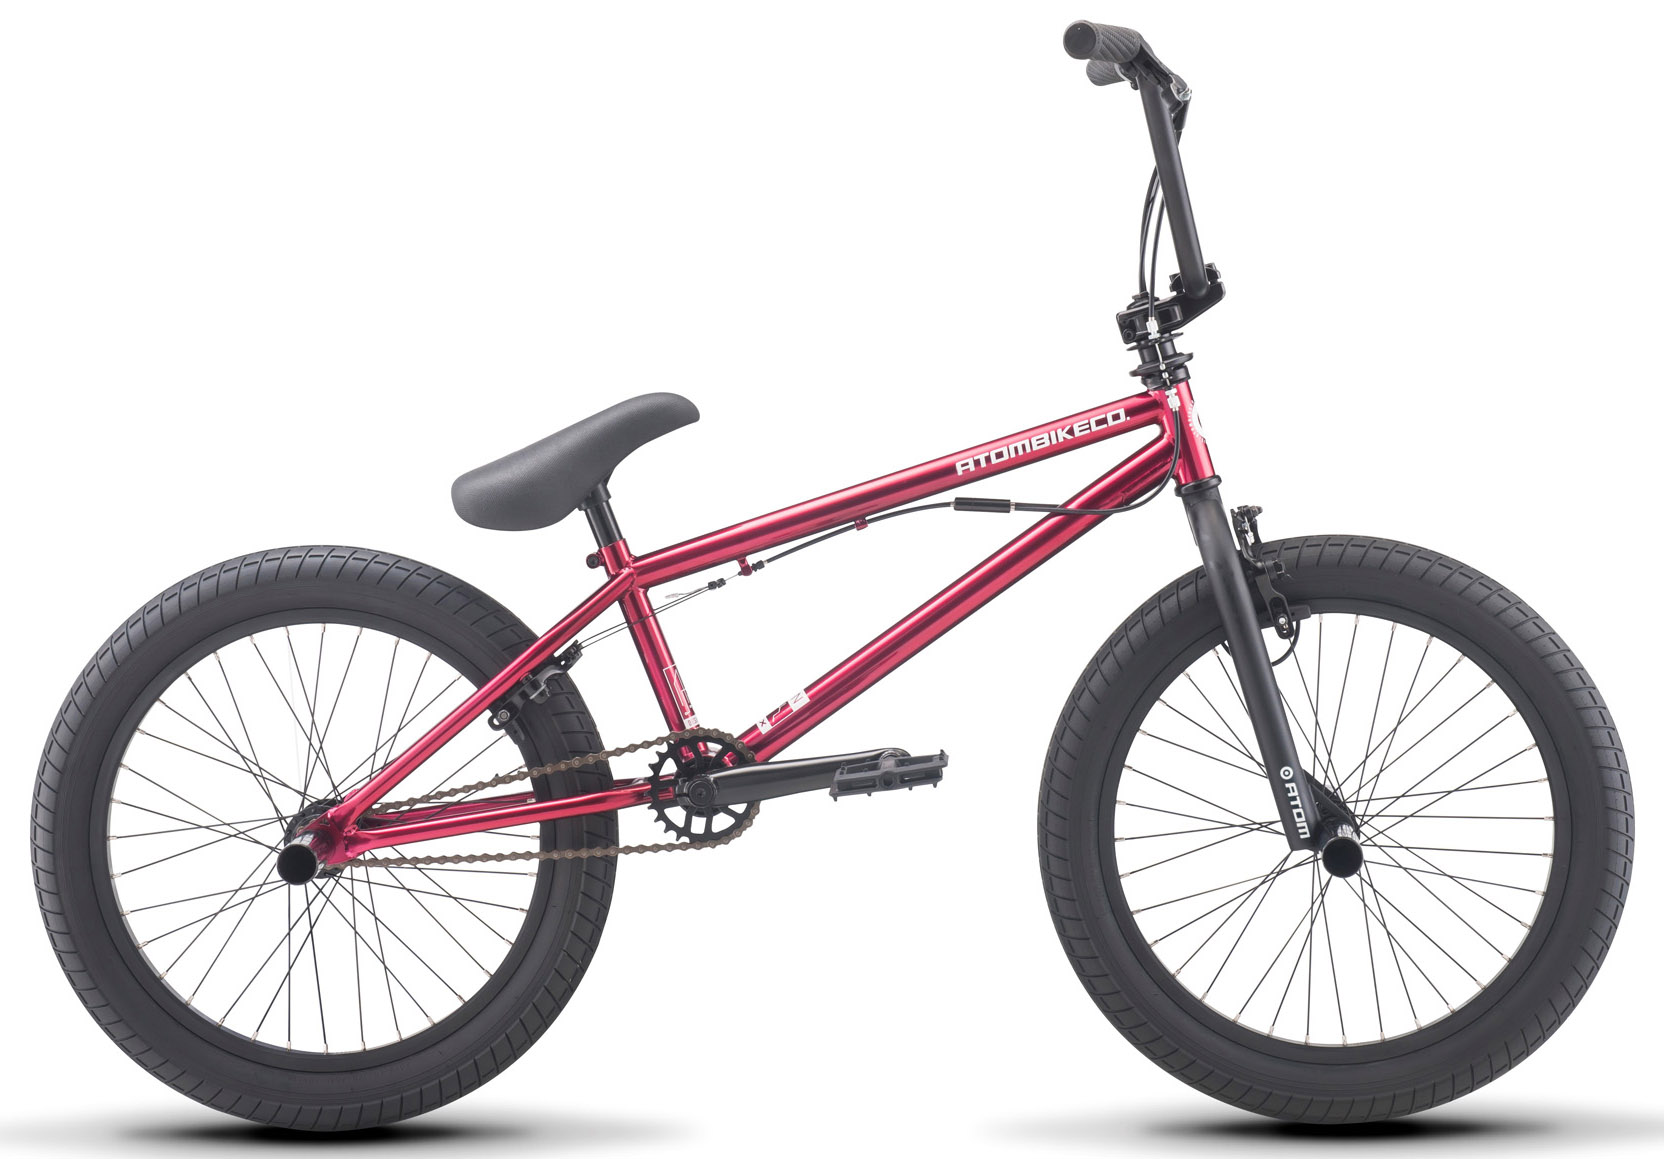  Отзывы о Велосипеде BMX Atom Ion DLX 2020